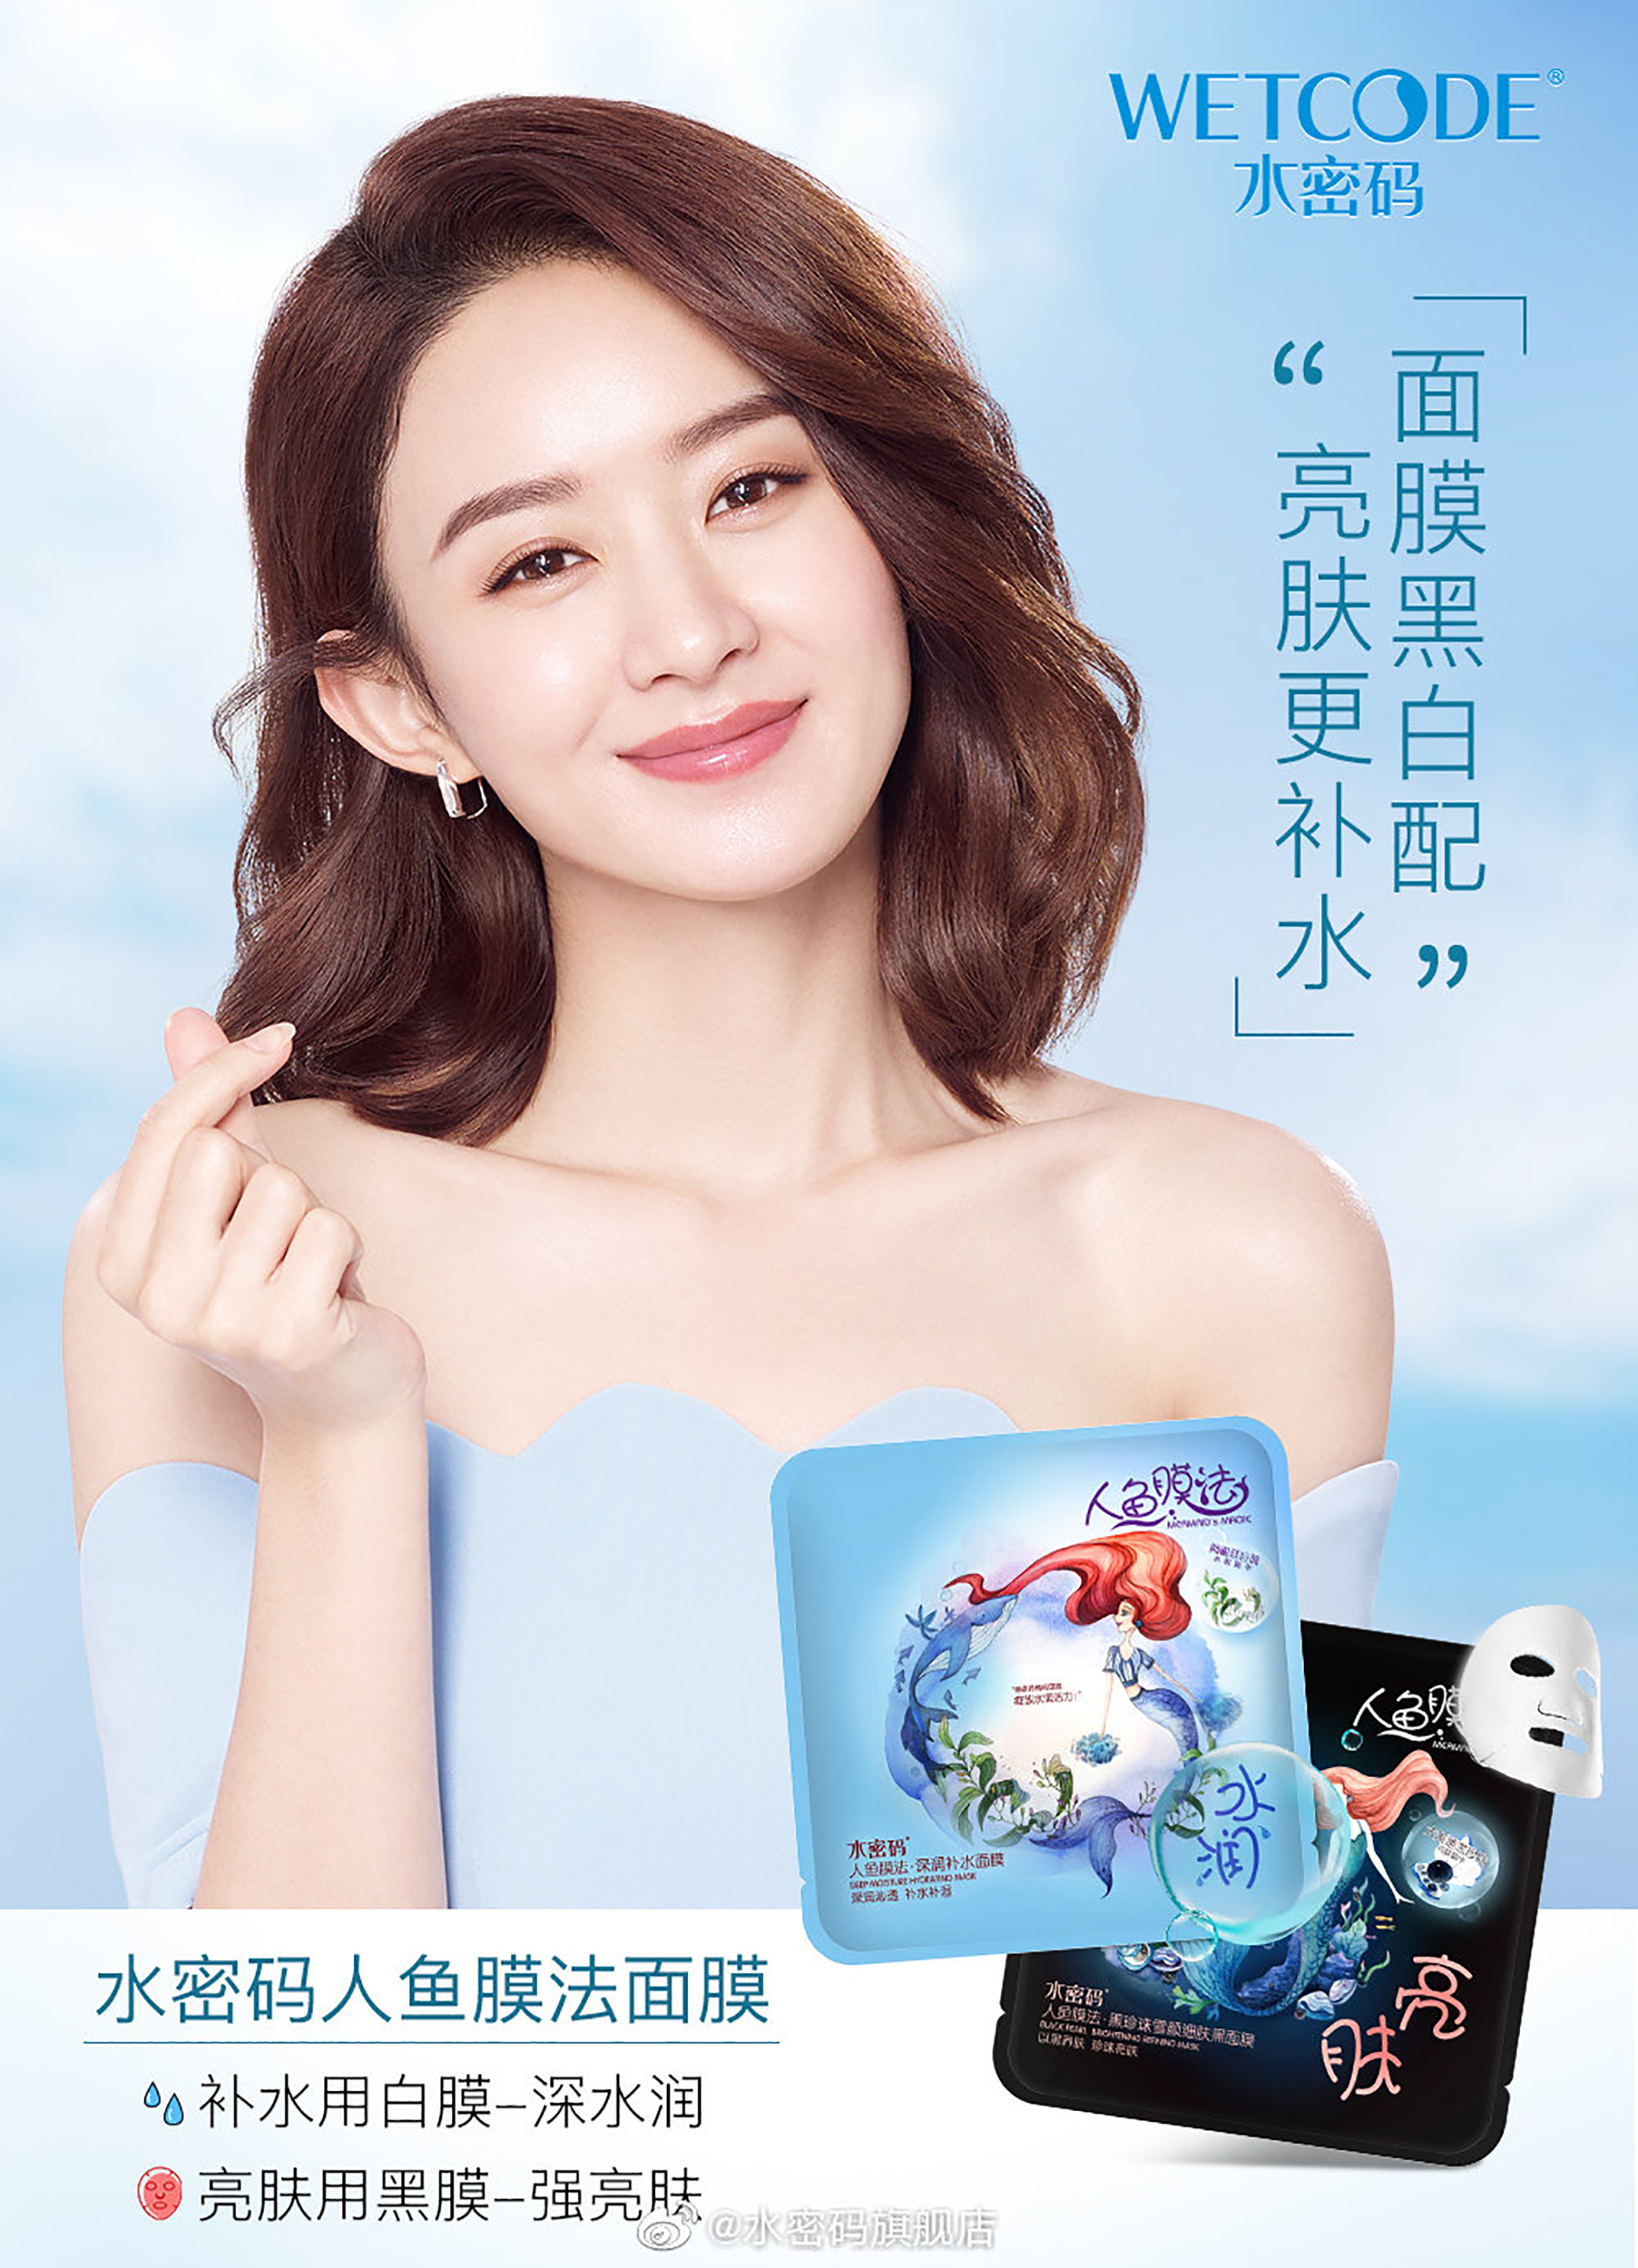 卡姿兰中国彩妆周品牌形象活动包装创意设计 - 锐森广告 - 精致、设计